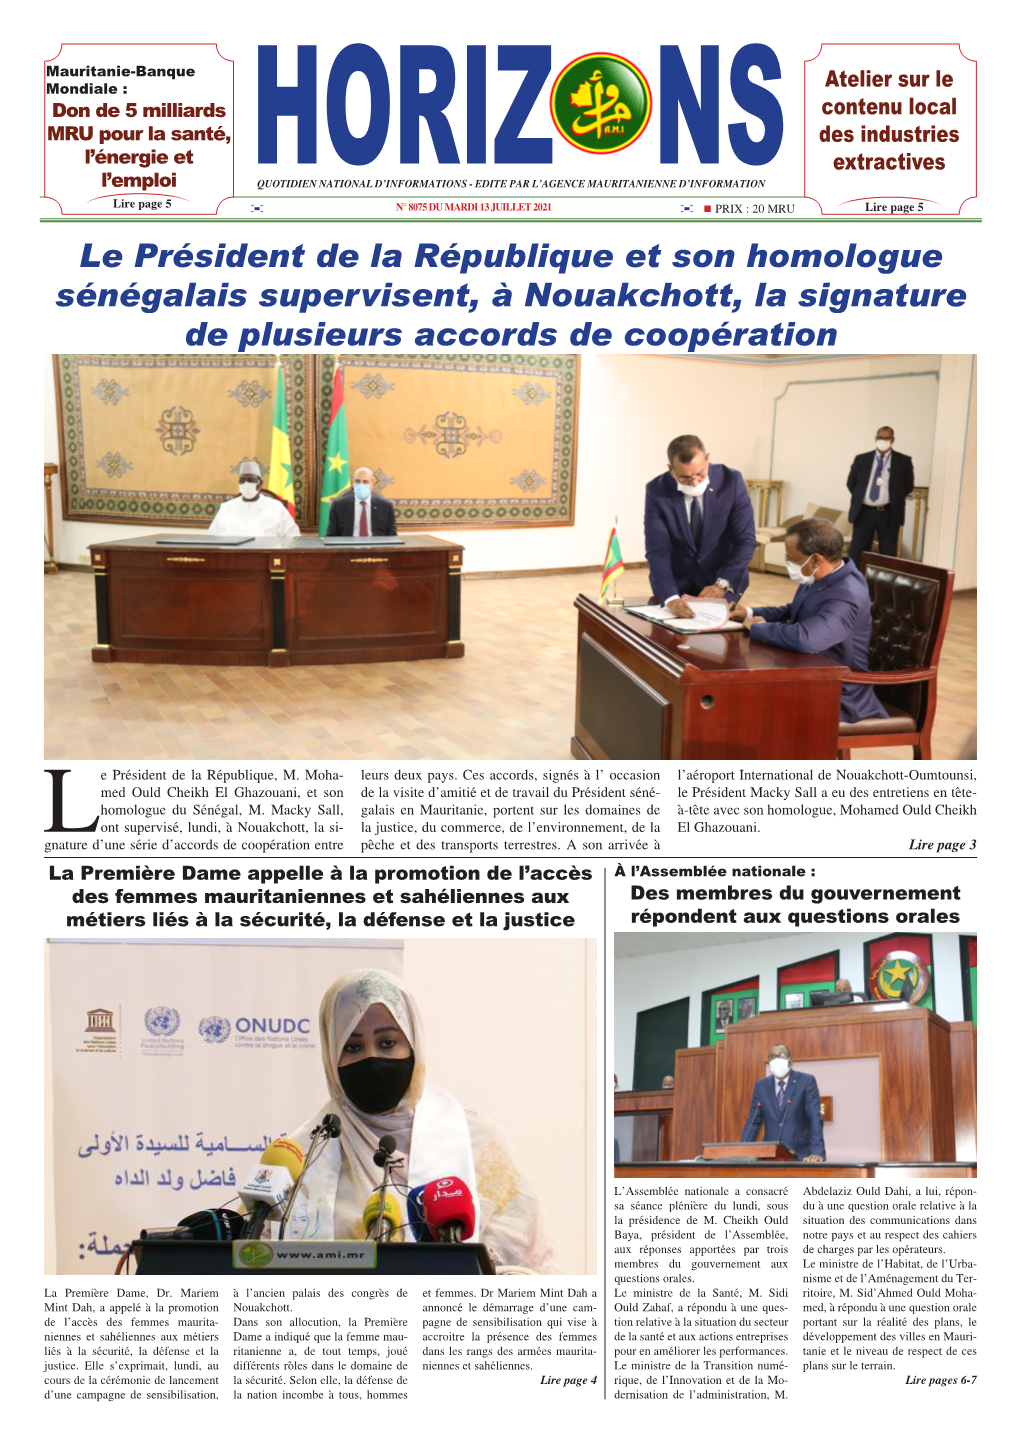 Le Président De La République Et Son Homologue Sénégalais Supervisent, À Nouakchott, La Signature De Plusieurs Accords De Coopération